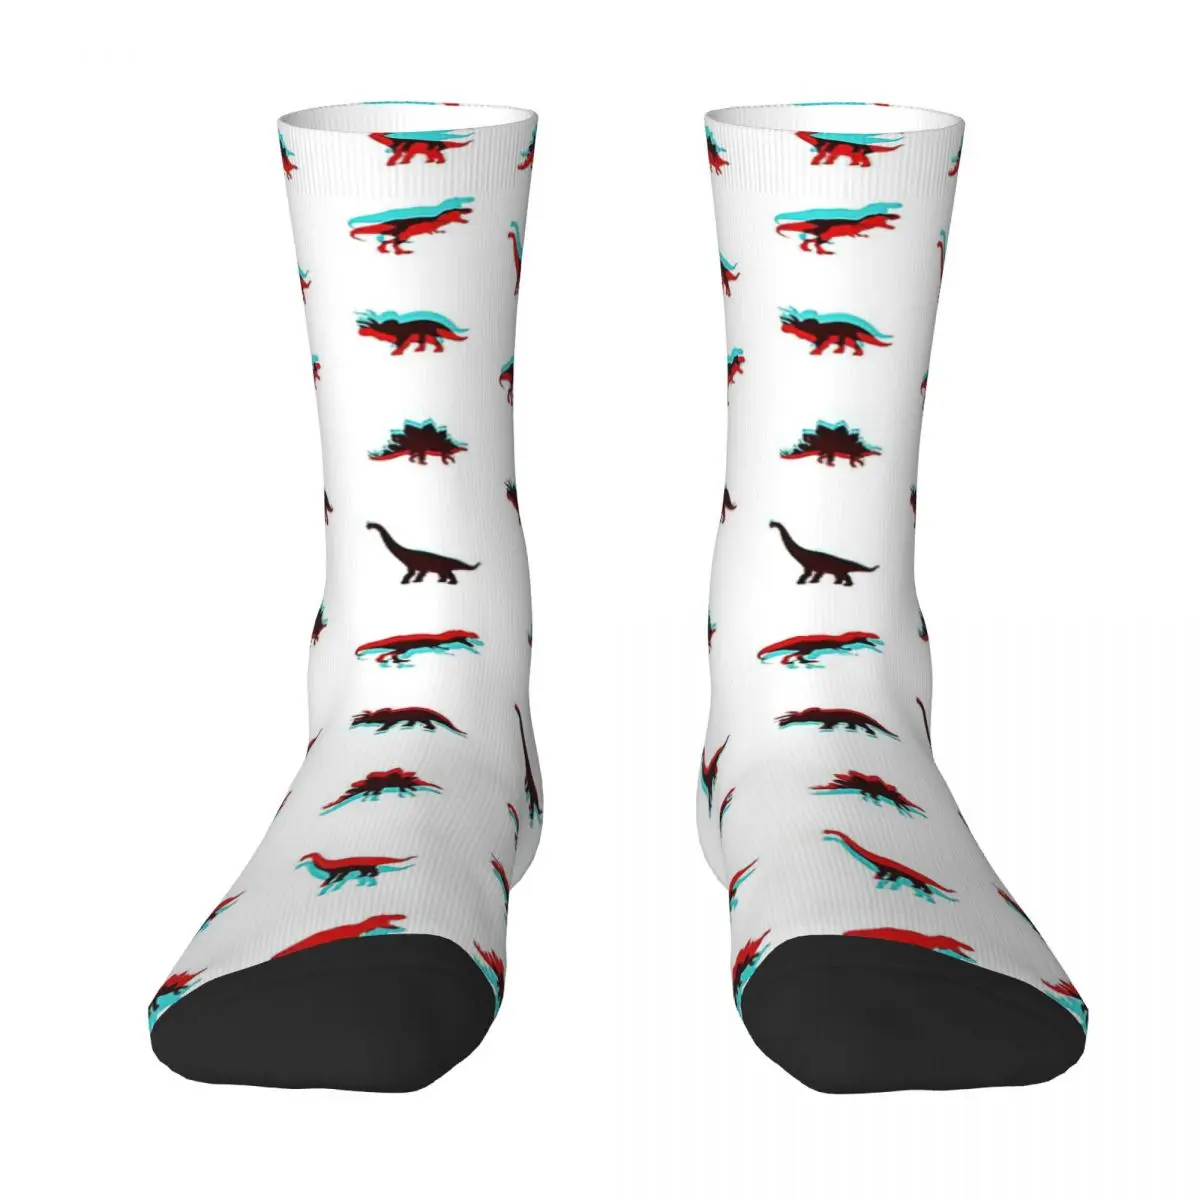 Dinosaur Adult Socks Unisex socks,men Socks women Socks